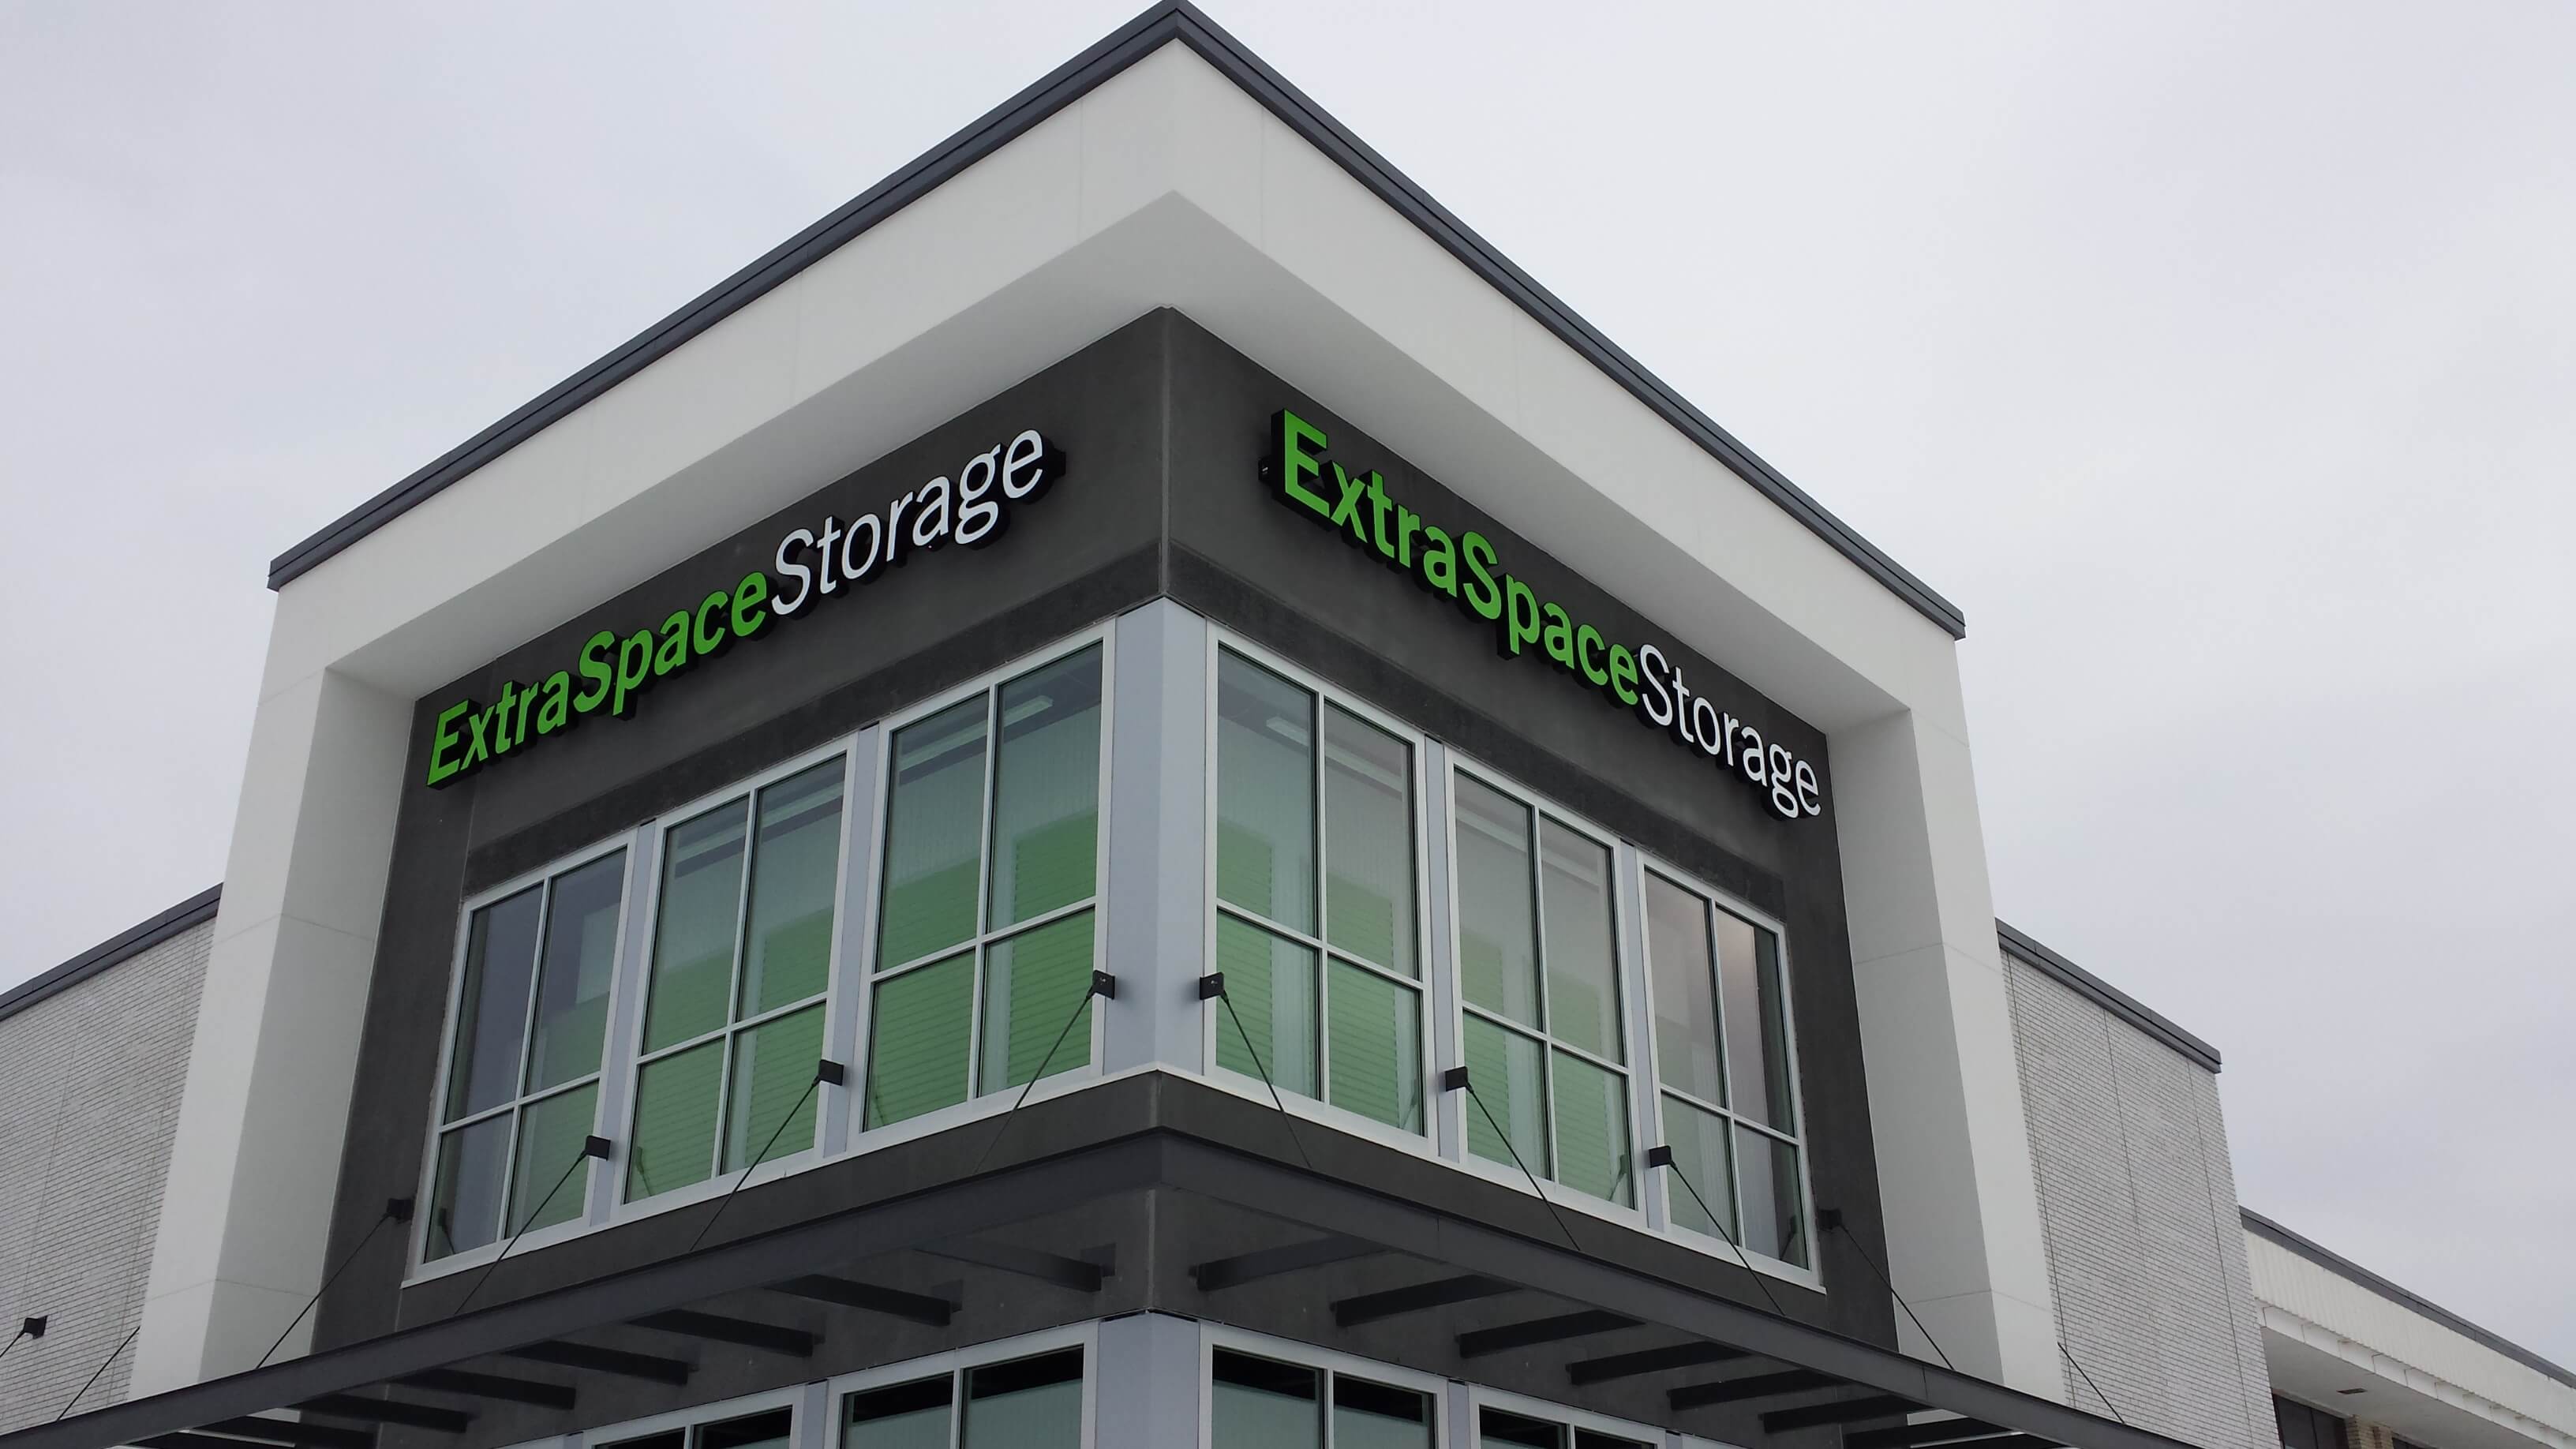 Extra Space Storage | Mohagen Hansen | Architecture | Interior Design